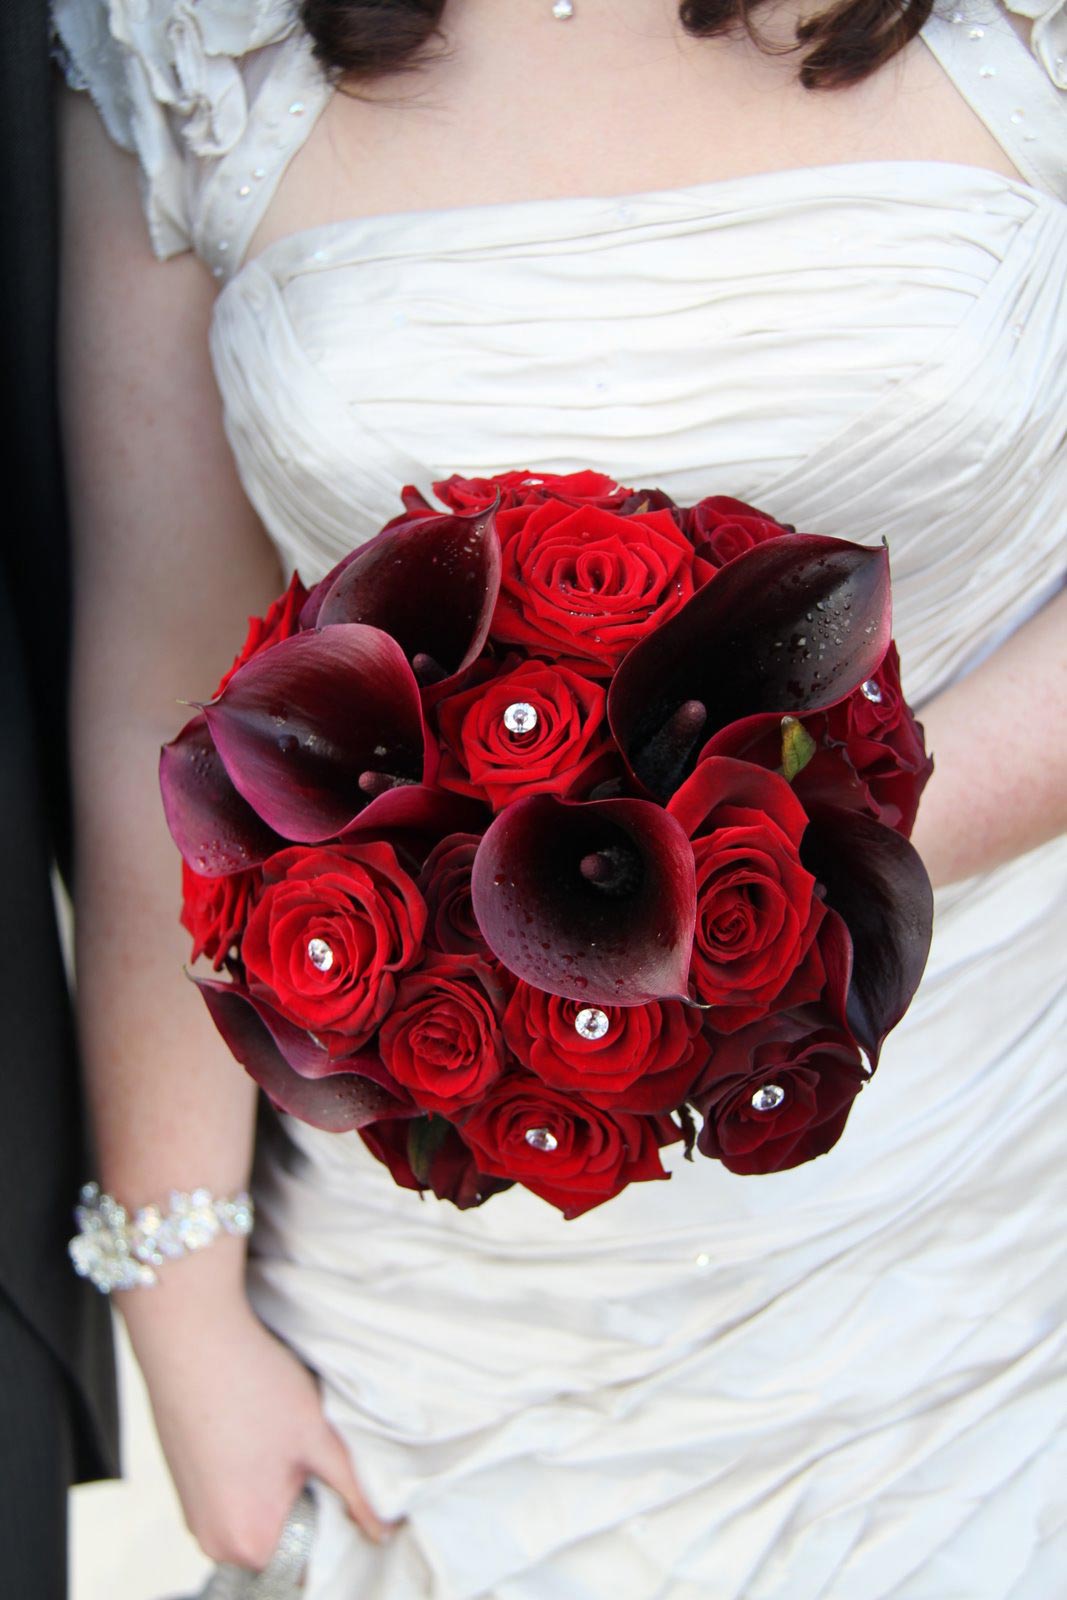 Hoa cưới cầm tay kết từ hoa hồng đỏ và hoa rum